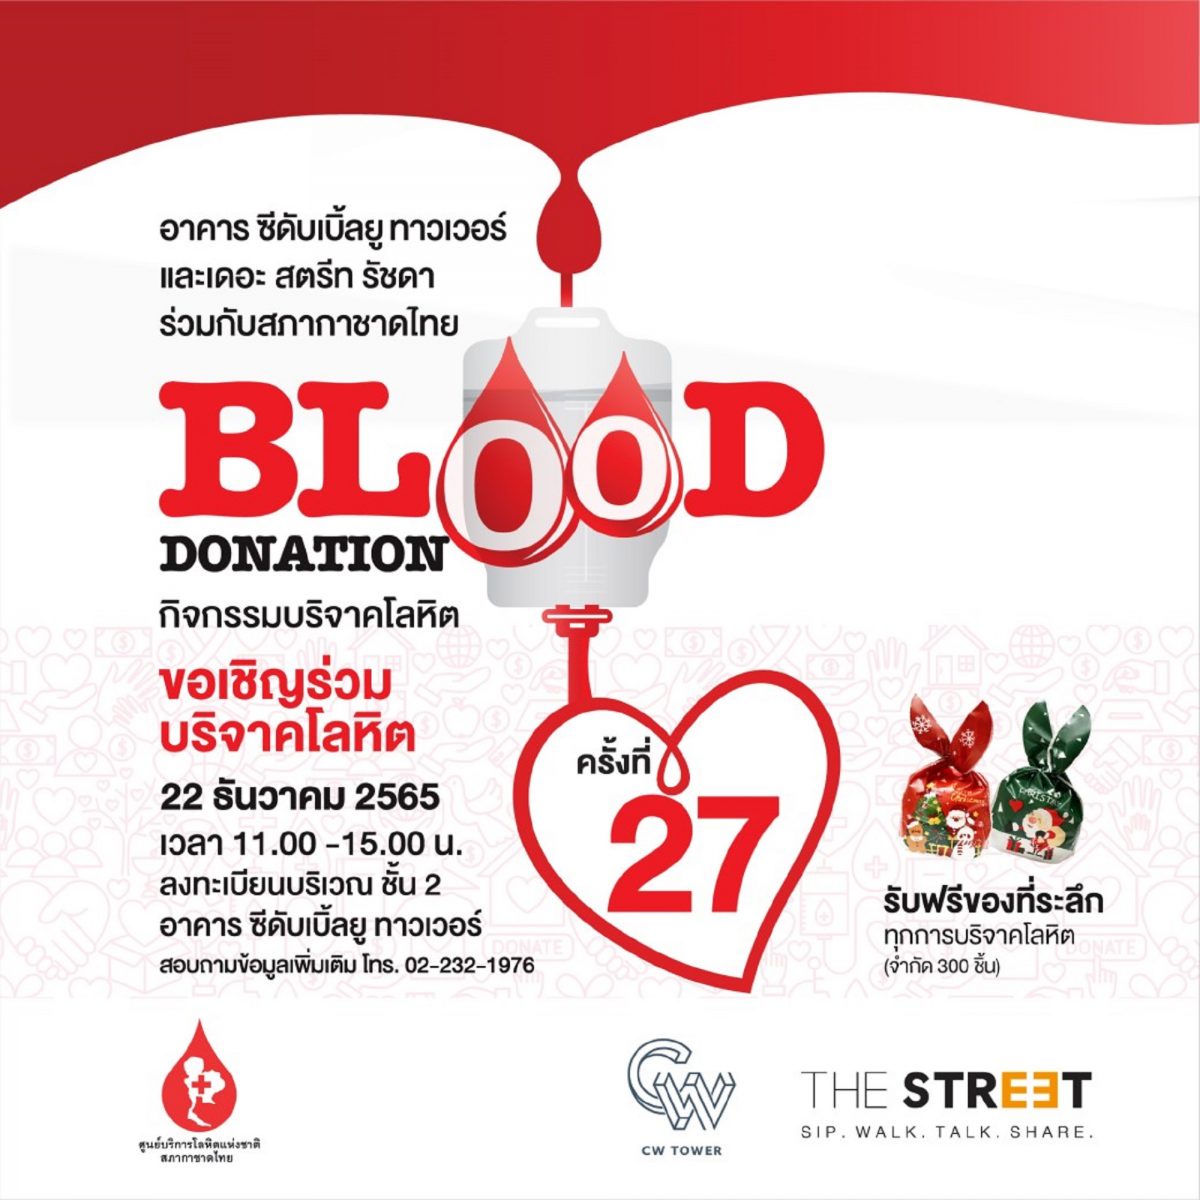 อาคาร ซีดับเบิ้ลยู ทาวเวอร์ จับมือ เดอะ สตรีท รัชดา ชวนคนไทยร่วมบริจาคโลหิตในกิจกรรม Blood Donation ครั้งที่